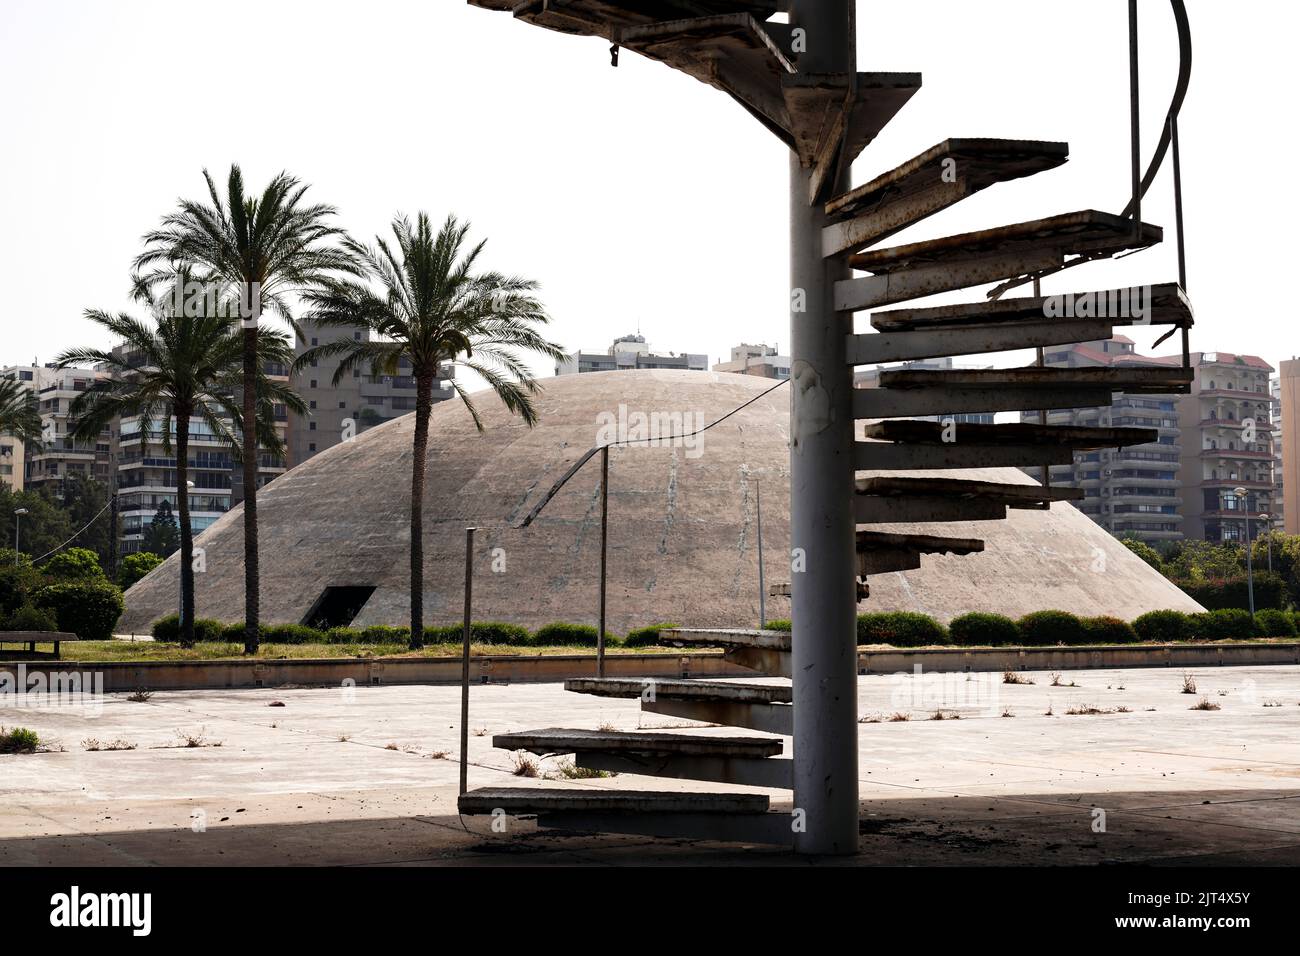 Der Architekt Oscar Niemeyer entwarf die Gebäude für das Internationale Messezentrum Rashid Karami in Tripolis, aber die Bauarbeiten wurden aufgrund des Ausbruchs des Bürgerkrieges nicht abgeschlossen. Tripolis, Libanon Stockfoto